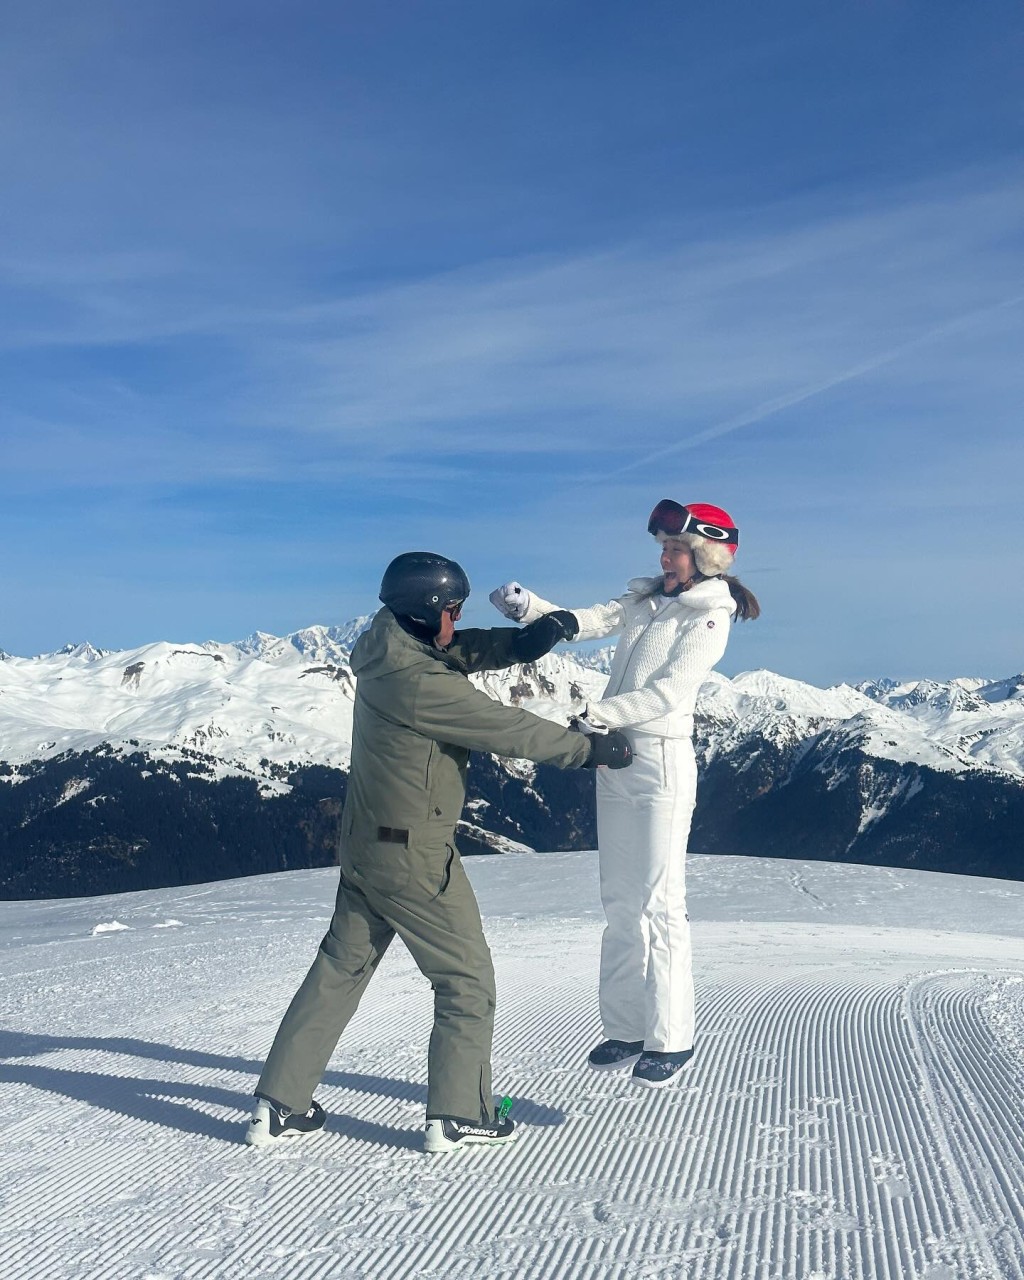 李美慧在IG上载去滑雪的相片。